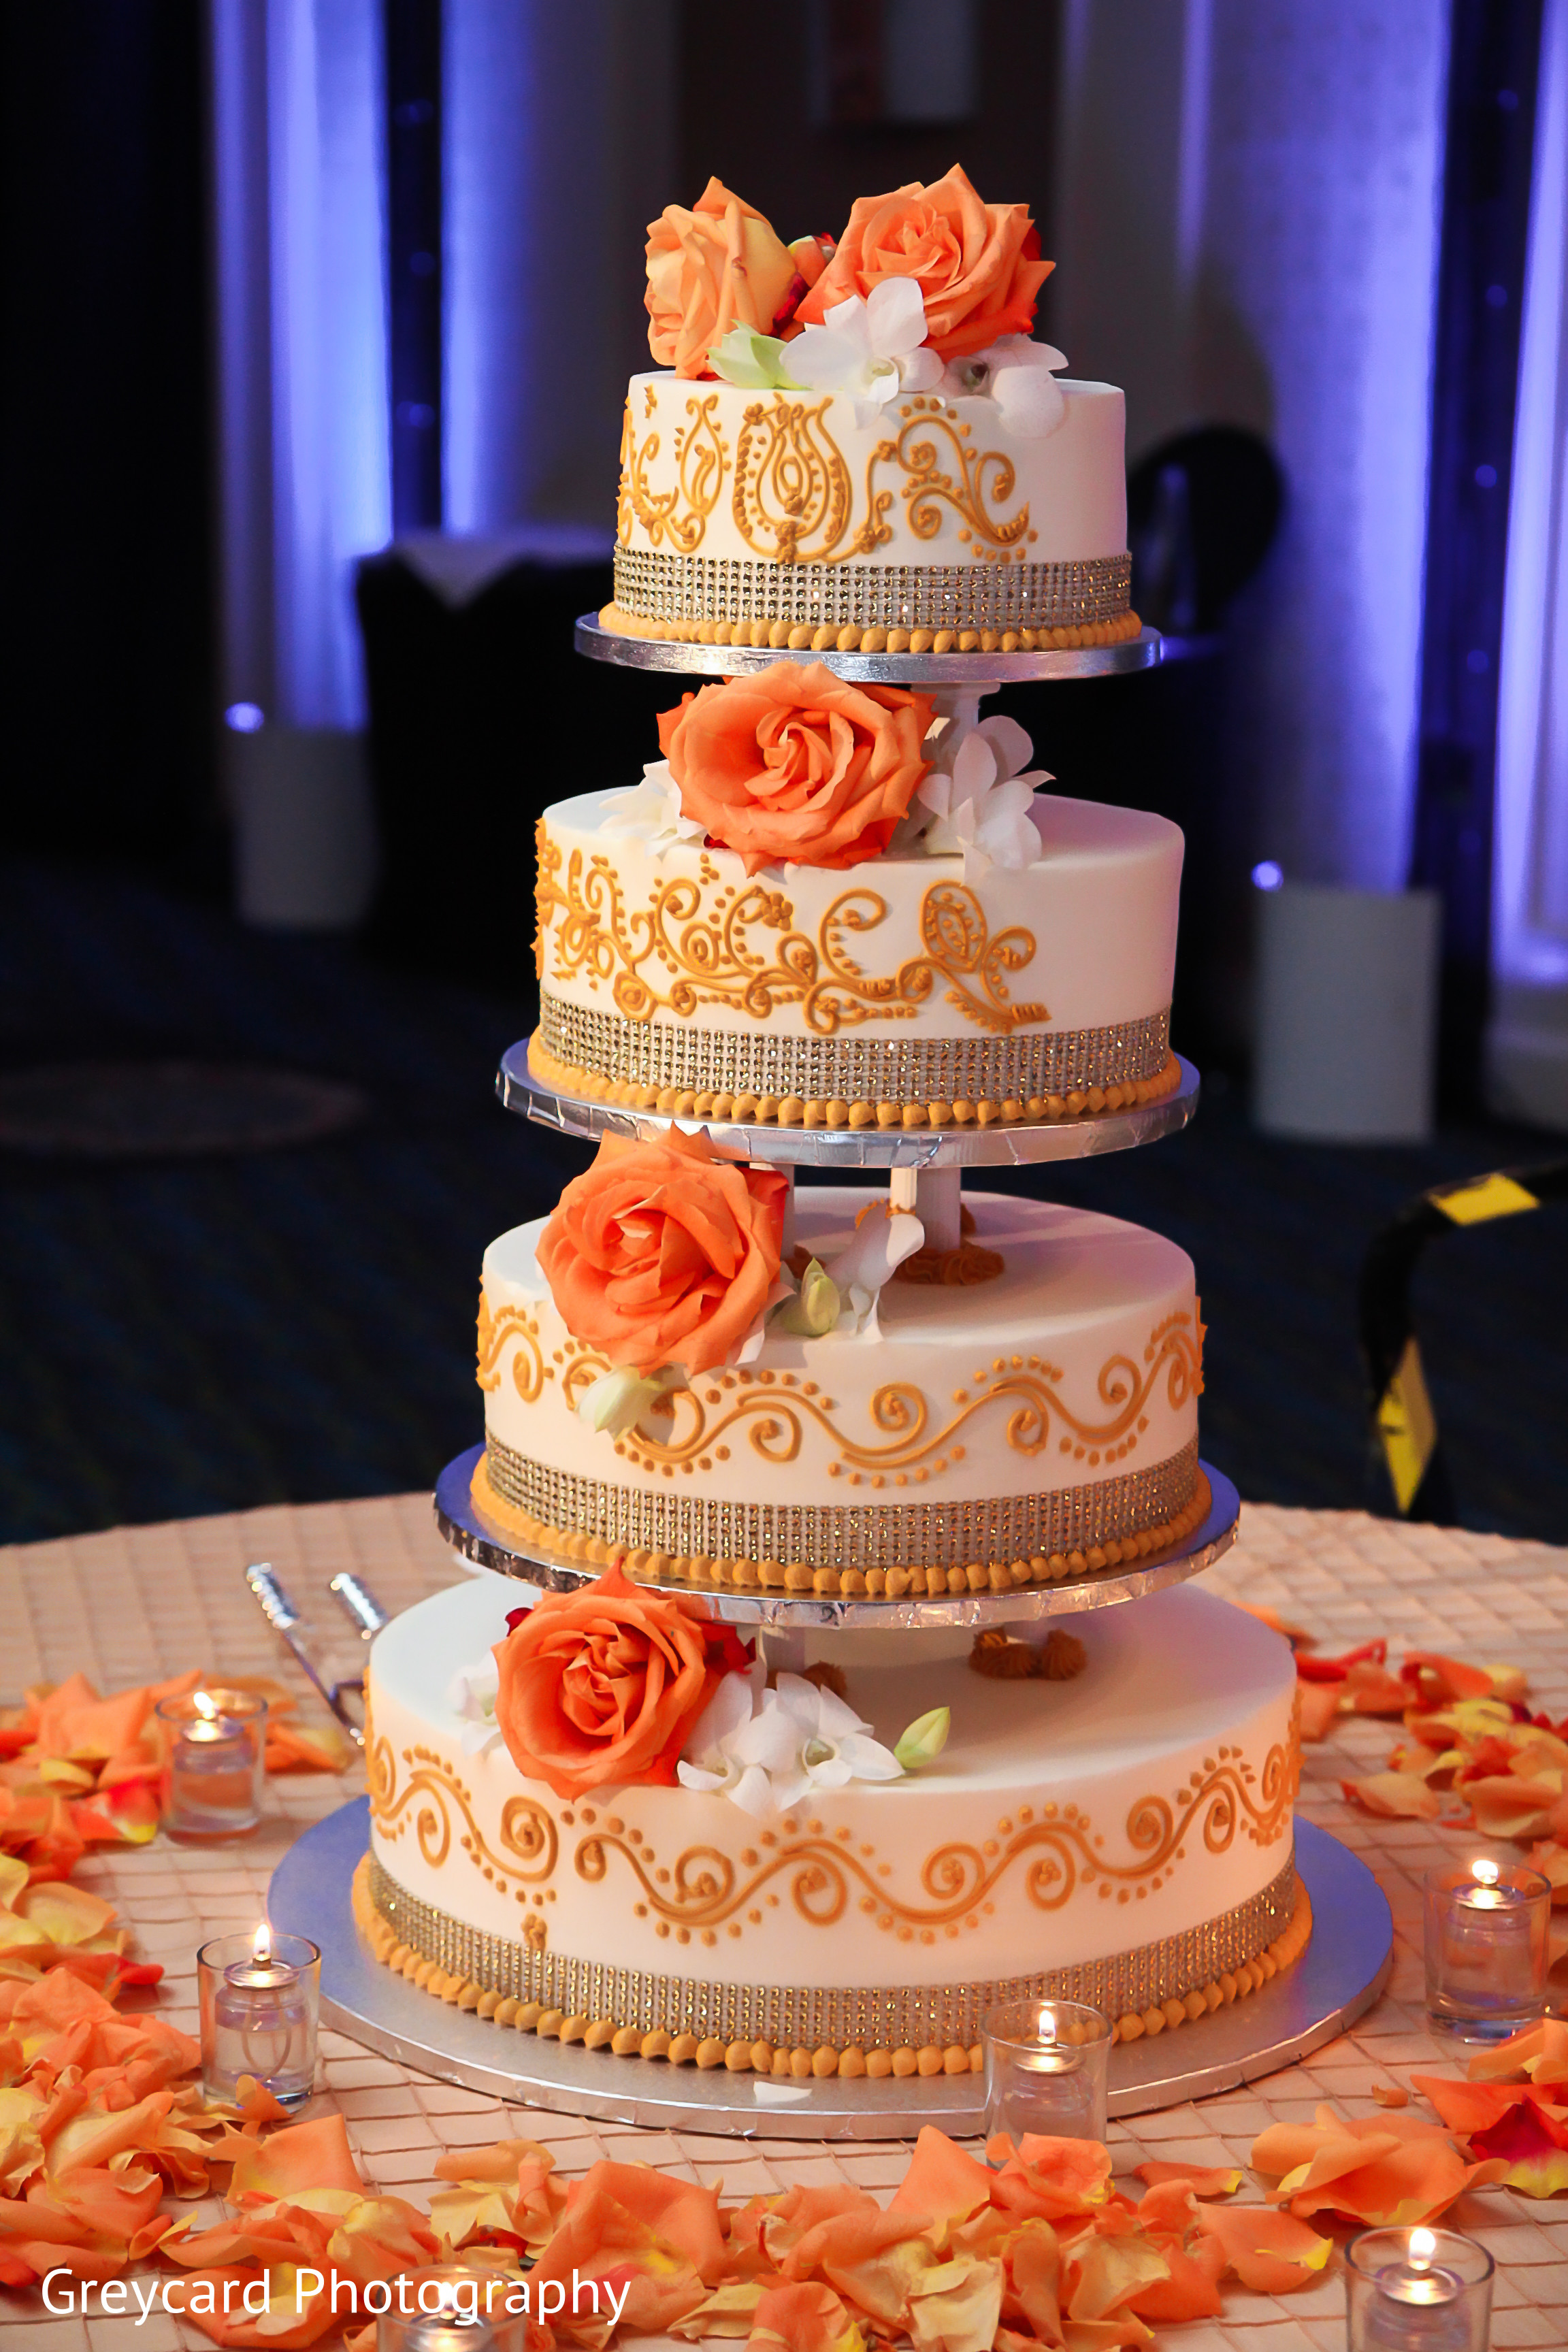 Most Ordered Wedding Cake / Engagement Cake / Reception Cake - Cake Square  Chennai | Cake Shop in Chennai